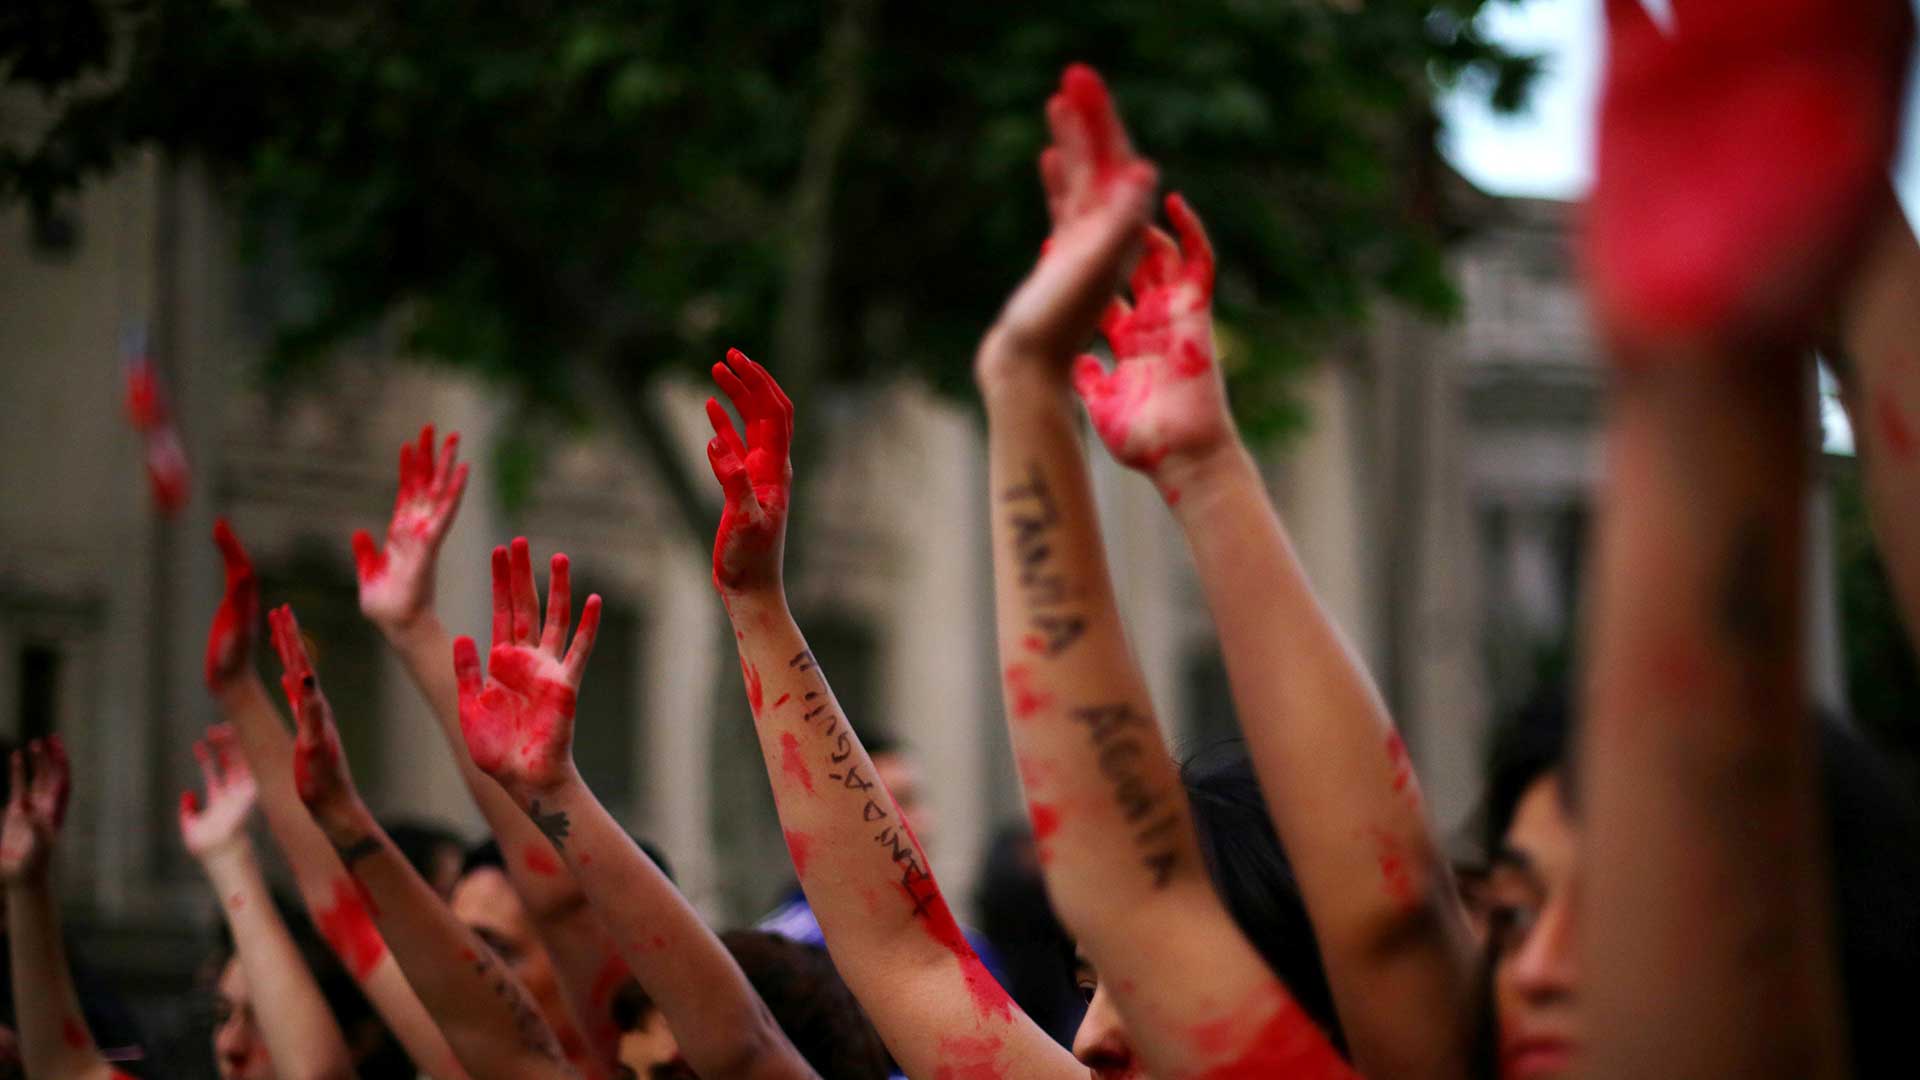 Una sentencia en Portugal justifica la violencia de género por el adulterio de la mujer